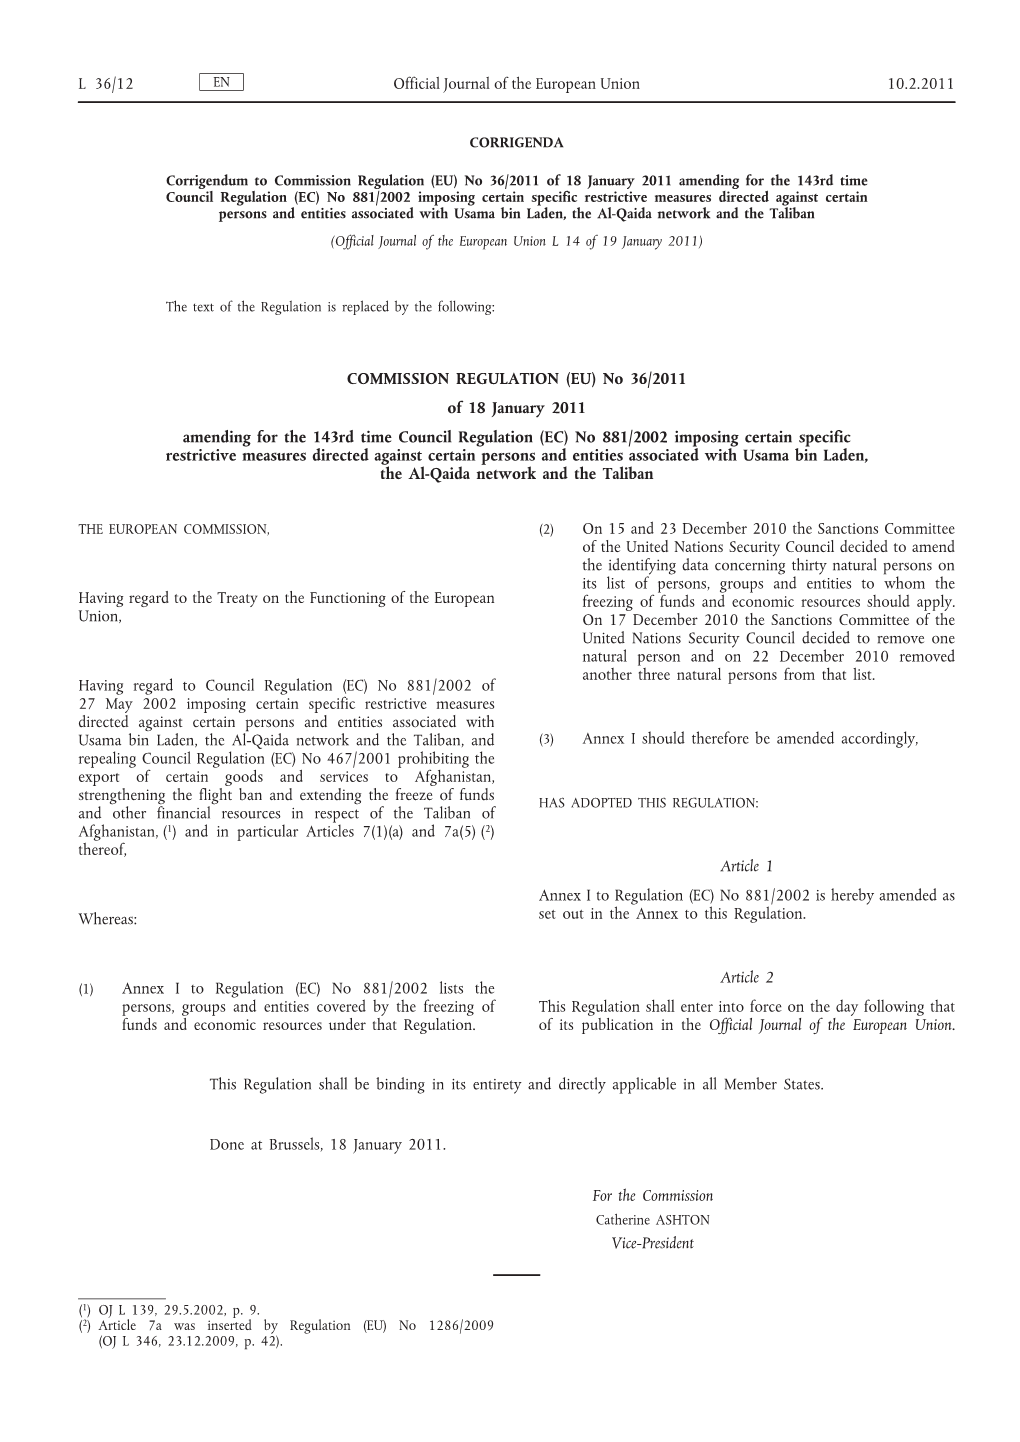 Corrigendum to Commission Regulation (EU) No 36/2011 of 18 January 2011 Amending for the 143Rd Time Council Regulation (EC) No 8